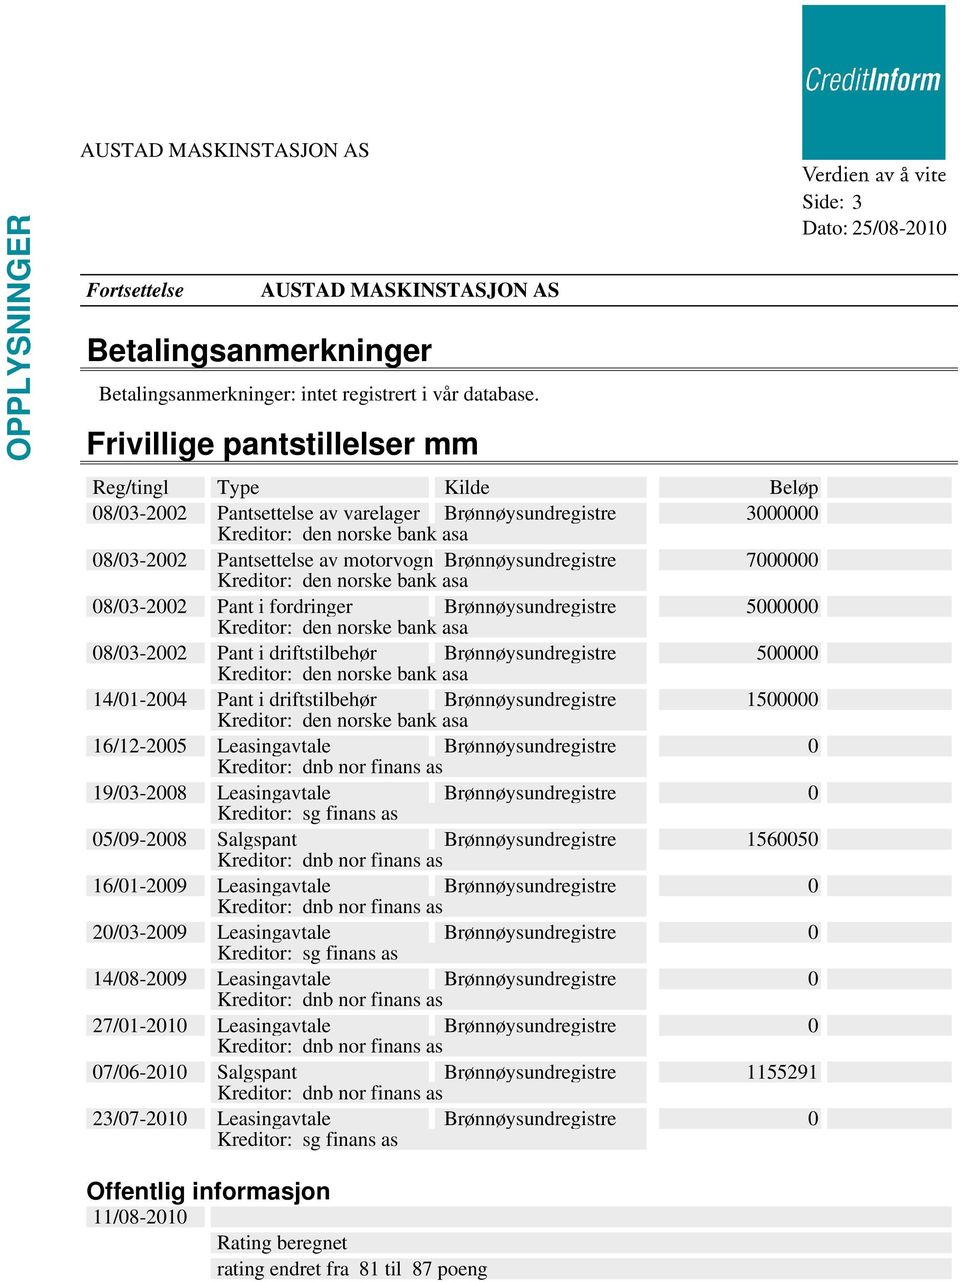 Brønnøysundregistre 7000000 Kreditor: den norske bank asa 08/03-2002 Pant i fordringer Brønnøysundregistre 5000000 Kreditor: den norske bank asa 08/03-2002 Pant i driftstilbehør Brønnøysundregistre